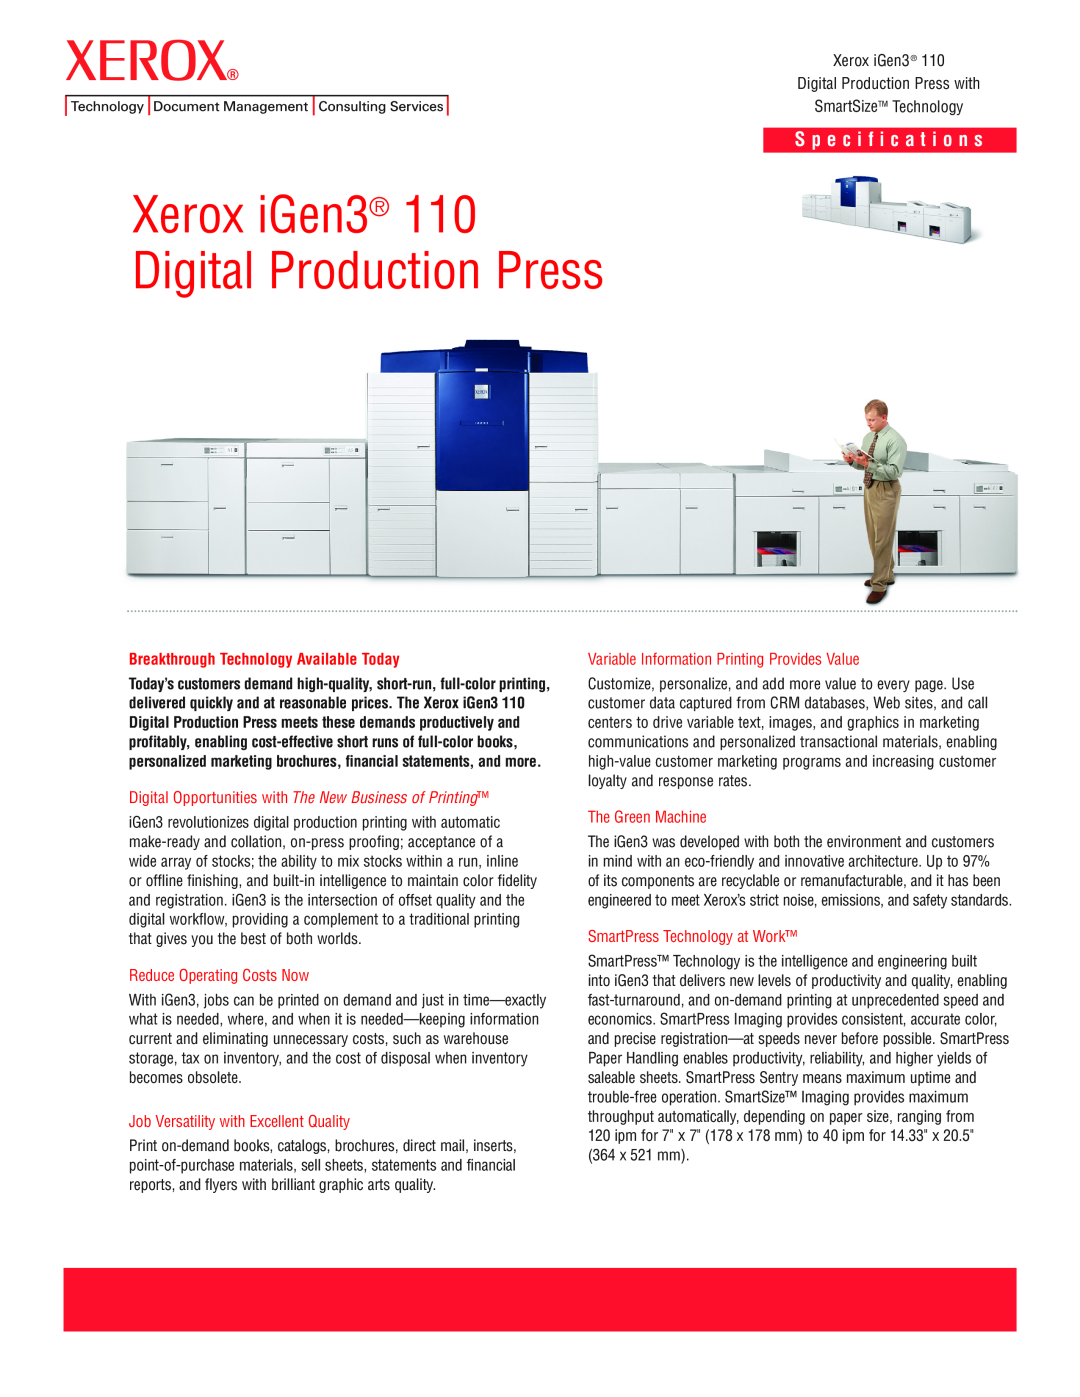 Xerox 110 specifications Xerox iGen3 Digital Production Press, S p e c i f i c a t i o n s, SmartSizeTM Technology 